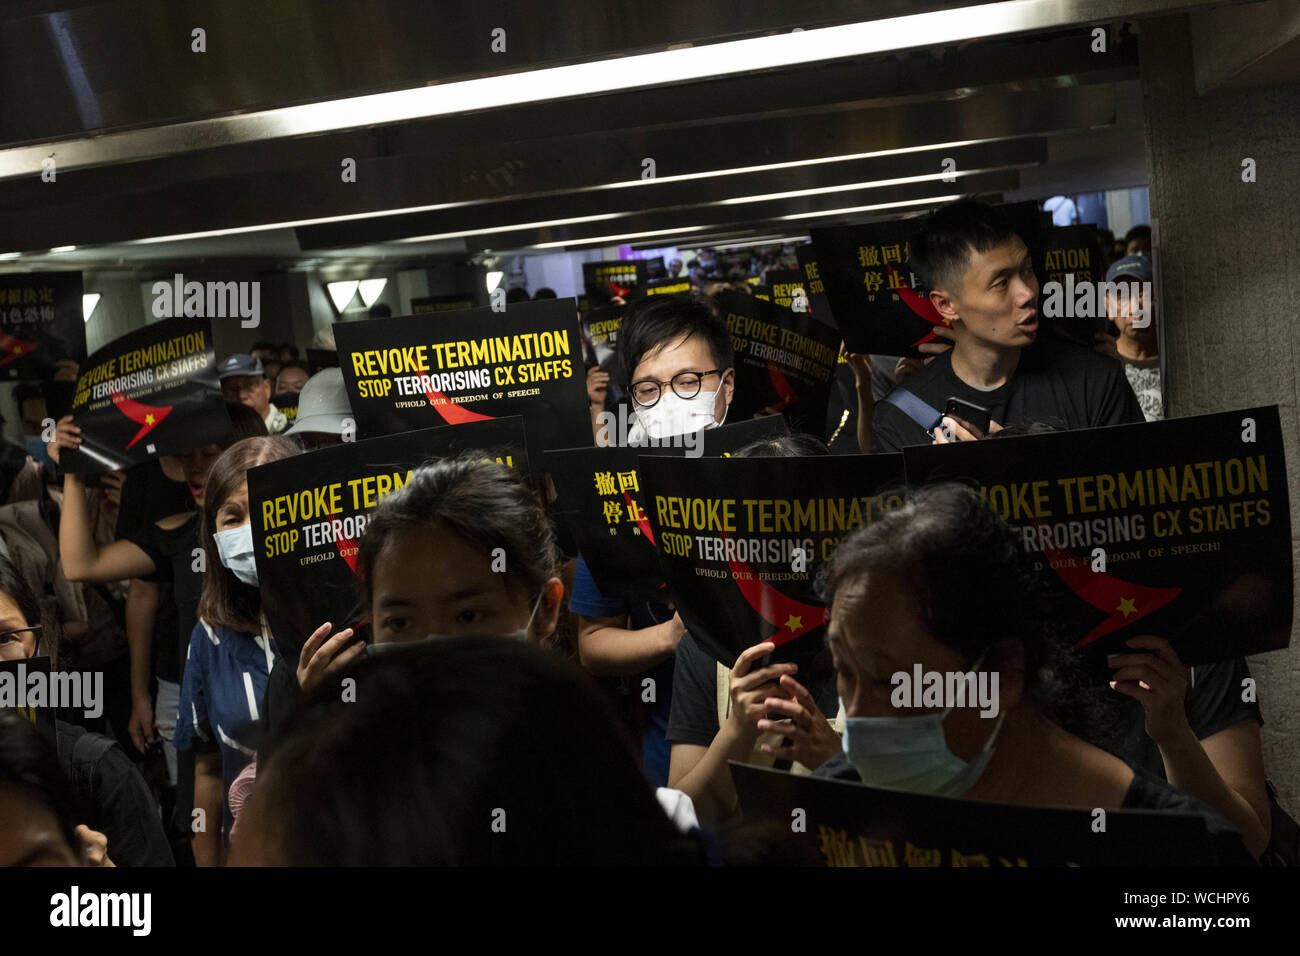 Agosto 28, 2019, Hong Kong, Cina: centinaia di dimostranti si sono riuniti a Hong Kong di Edimburgo per esprimere la loro opposizione alla terminazione dei lavoratori nel settore aeronautico a causa del loro sostegno della pro movimento democratico. Il rally ha sottolineato l importanza del diritto del lavoratore alla libertà di parola e hanno chiesto che essi essere reintegrato a loro positons dell'occupazione. Dopo il rally che i partecipanti hanno marciato al Pacific Place complesso. (Credito Immagine: © Adryel Talamantes/ZUMA filo) Foto Stock